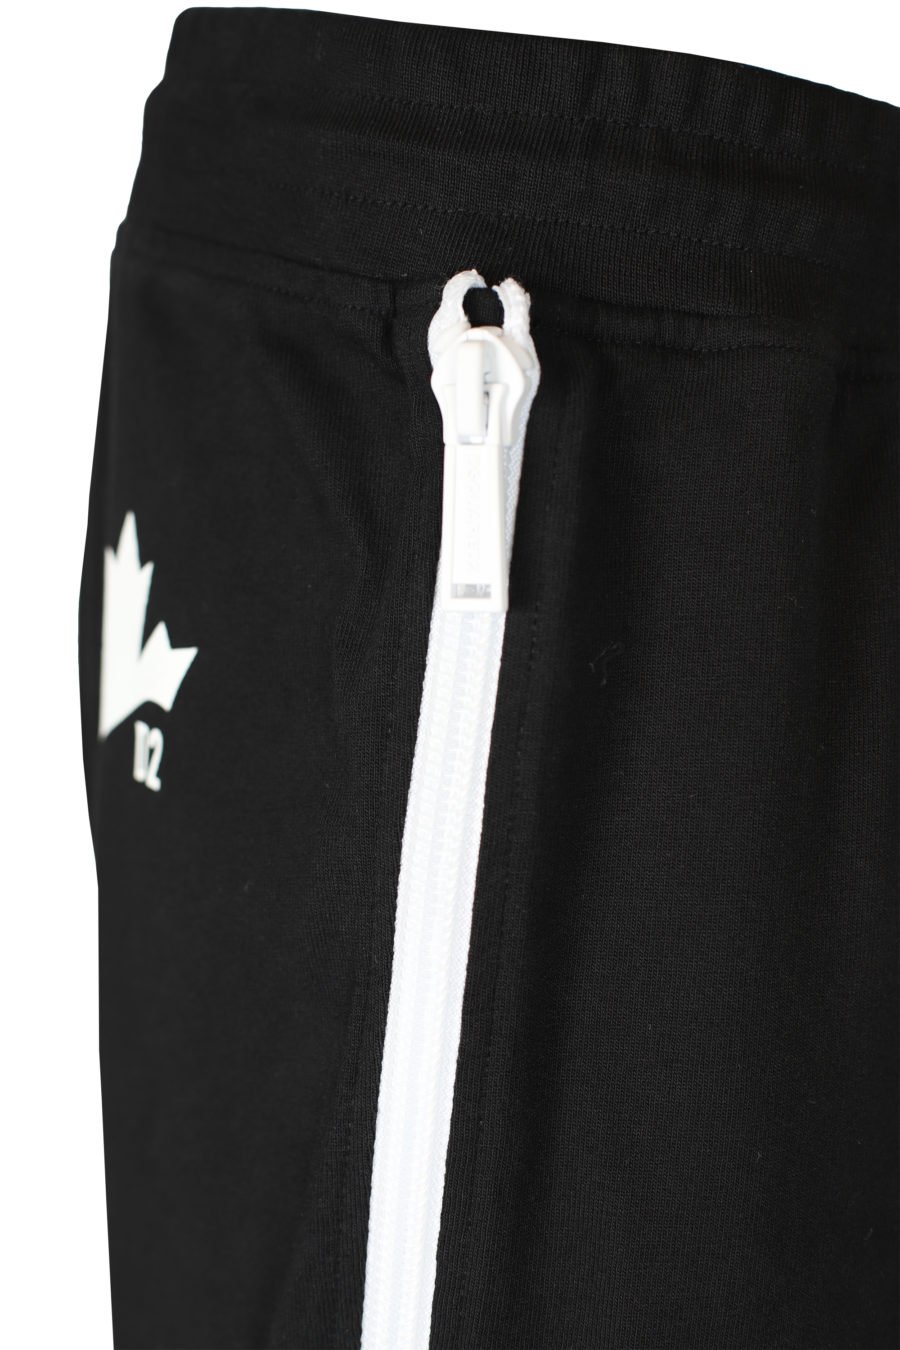 Pantalon de survêtement avec fermetures éclair blanches - IMG 2694